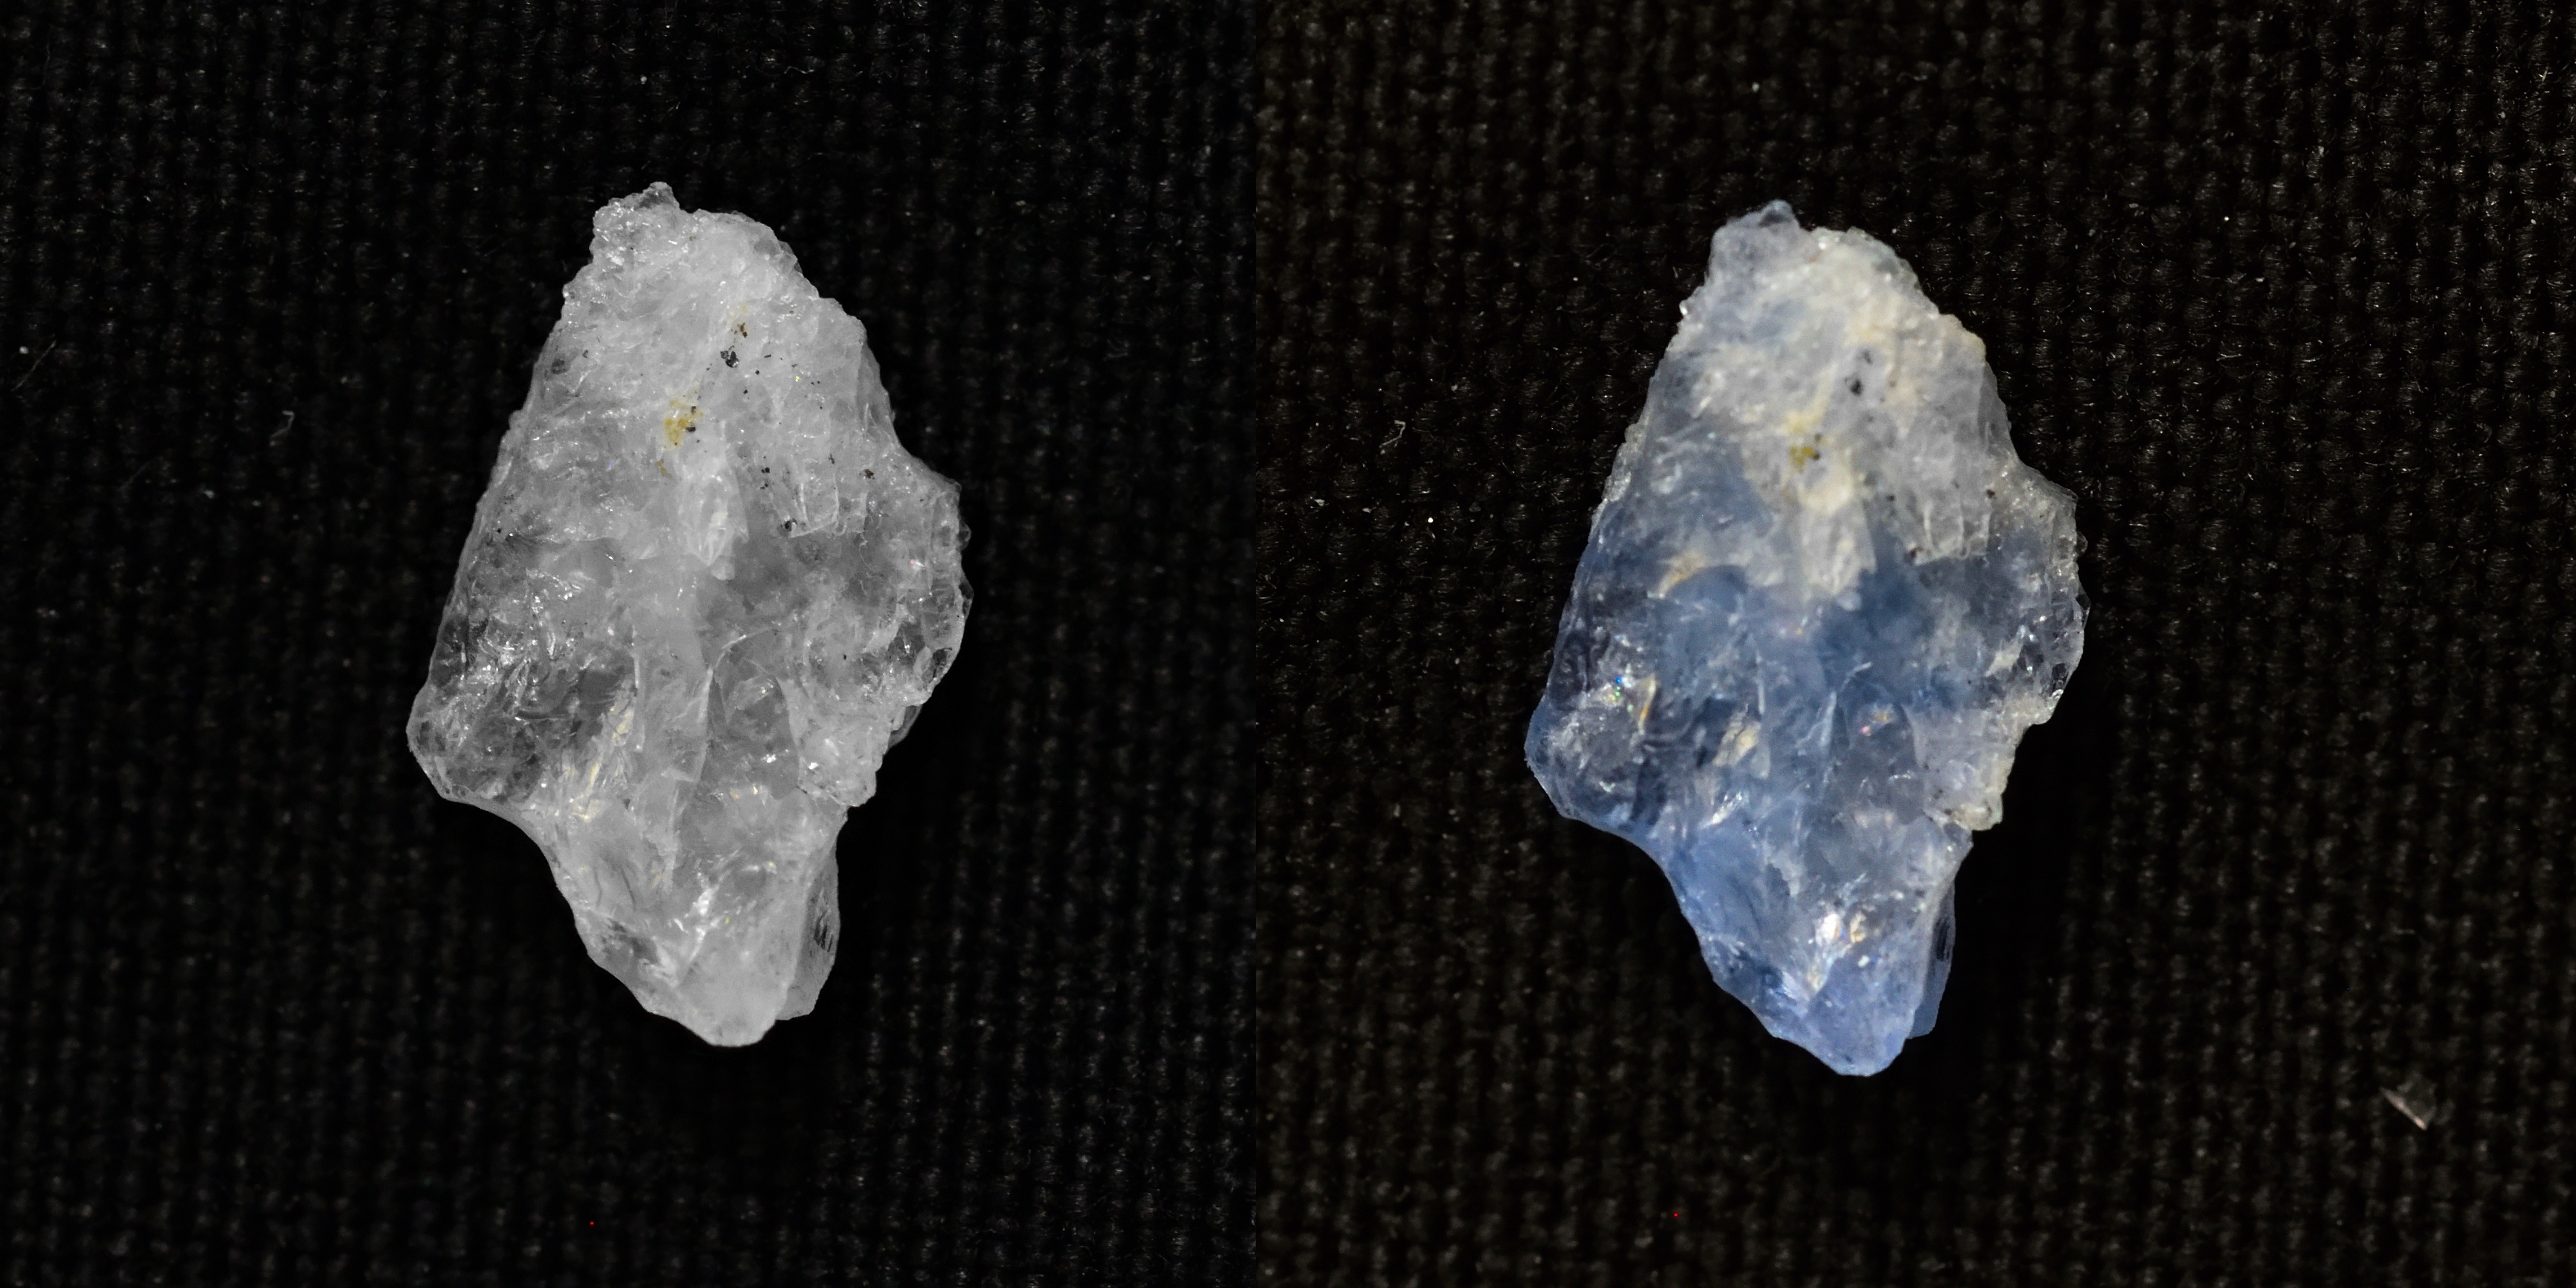 Poměrně běžný minerál scapolit se vlivem UV záření mění z bílého na modrý. Změna, která je po odstranění UV zdroje reverzibilní, trvá jen několik sekund, protože se atomy ve struktuře pohybují na krátké vzdálenosti. (Vzorek je z Afghánistánu) Foto: S